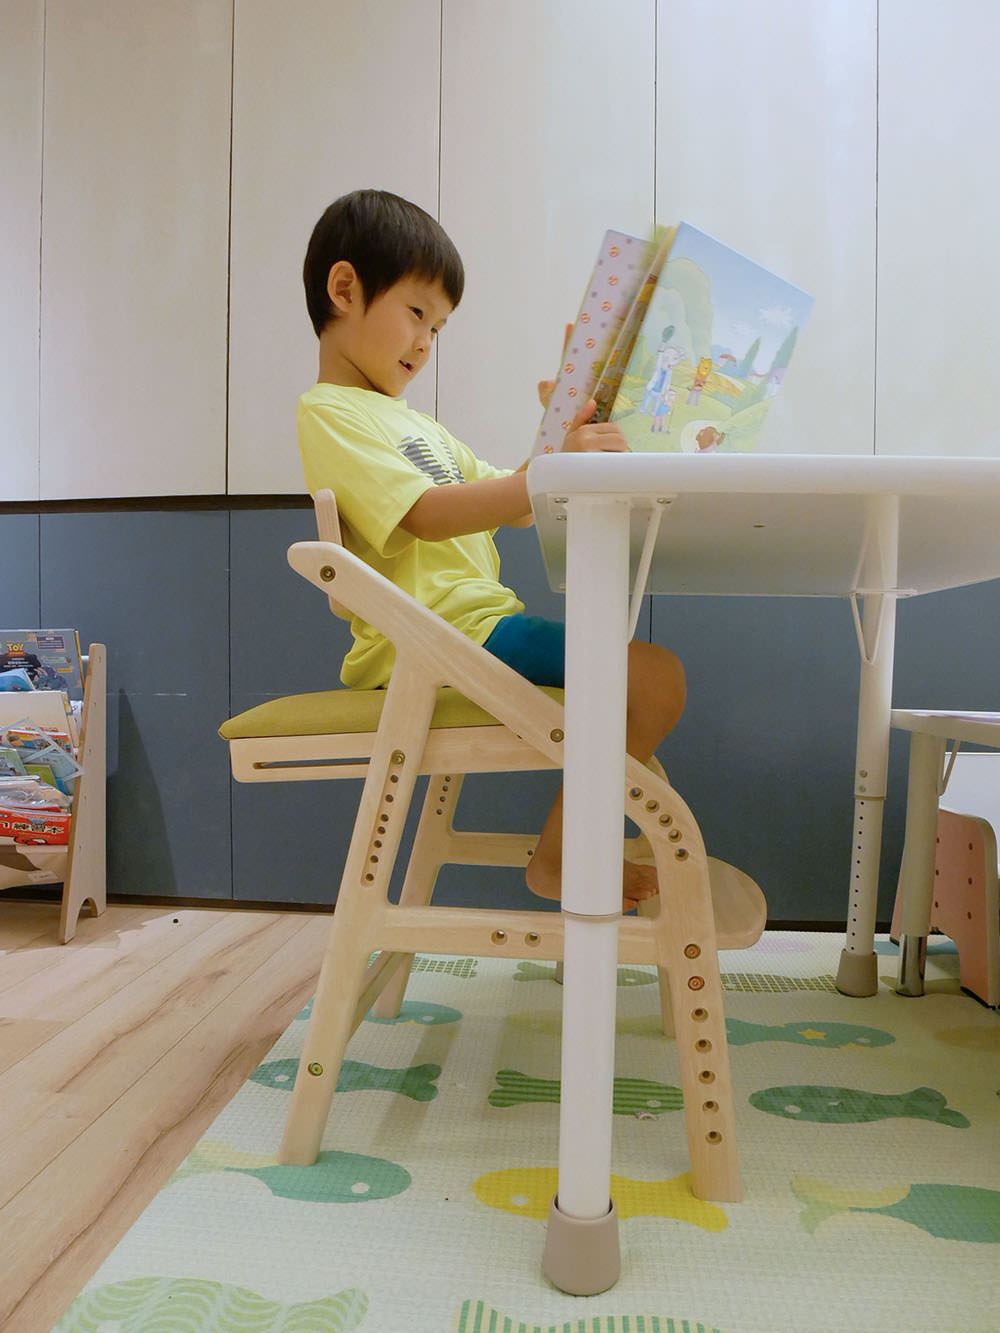 [啾團] 讓小朋友可以一歲用到成年的安全成長桌及成長椅,愛兒館ilovekids我的第一張桌子+椅子(ADATTO學童椅)